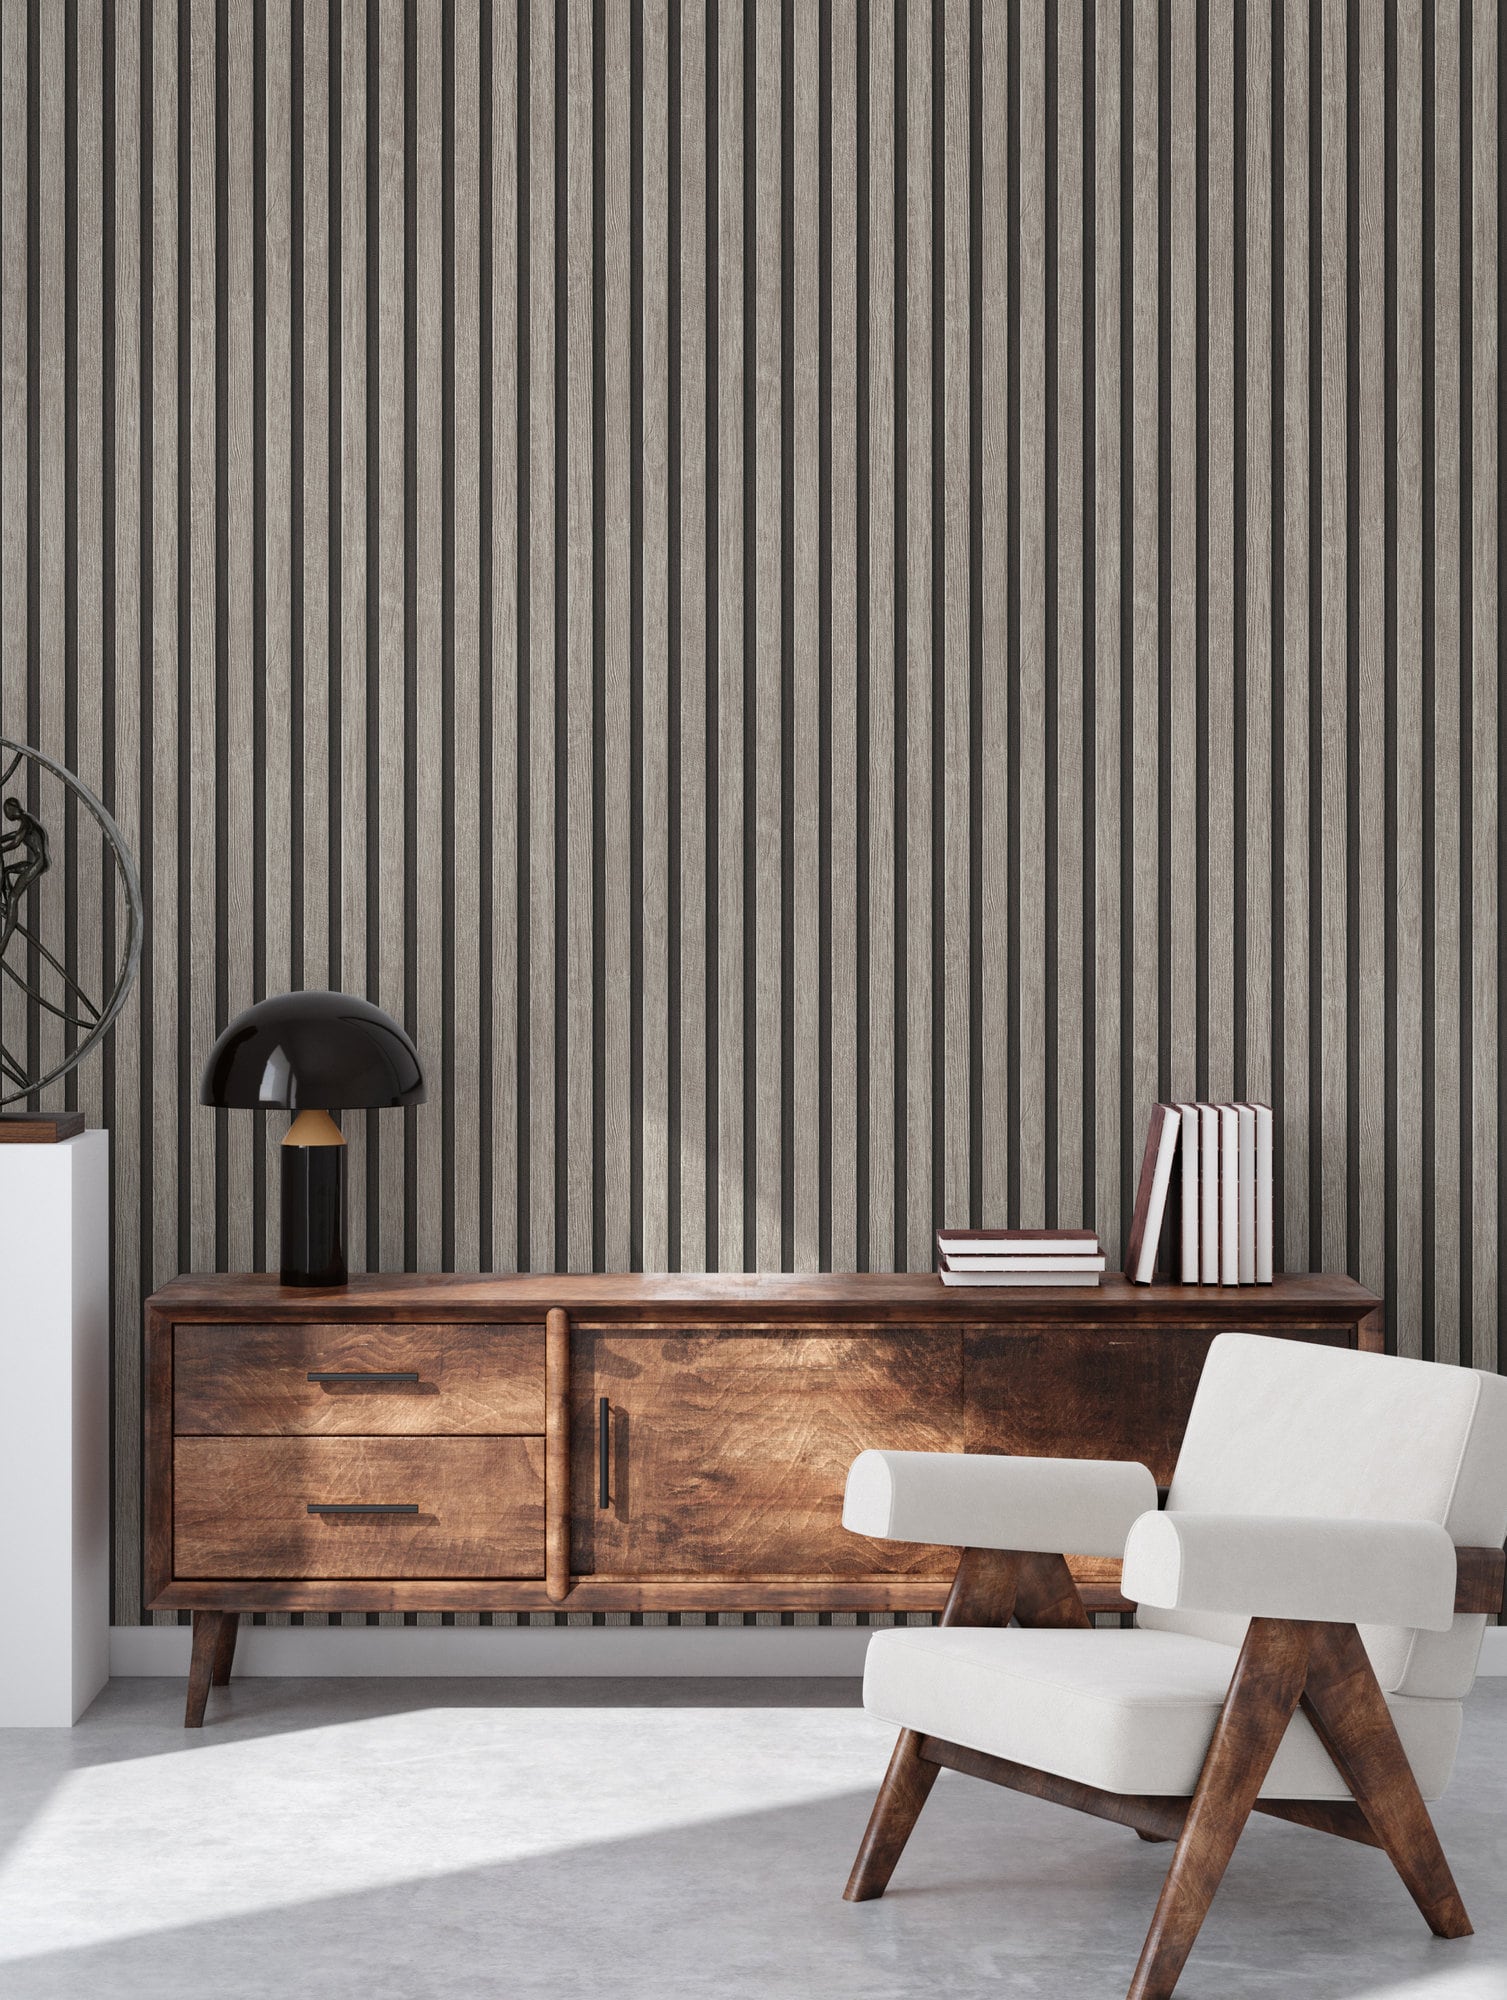 MYWIND-papel de pared de madera Natural para decoración del hogar, muestra  pequeña, nuevo diseño de corcho blanco con purpurina plateada, nuevo estilo